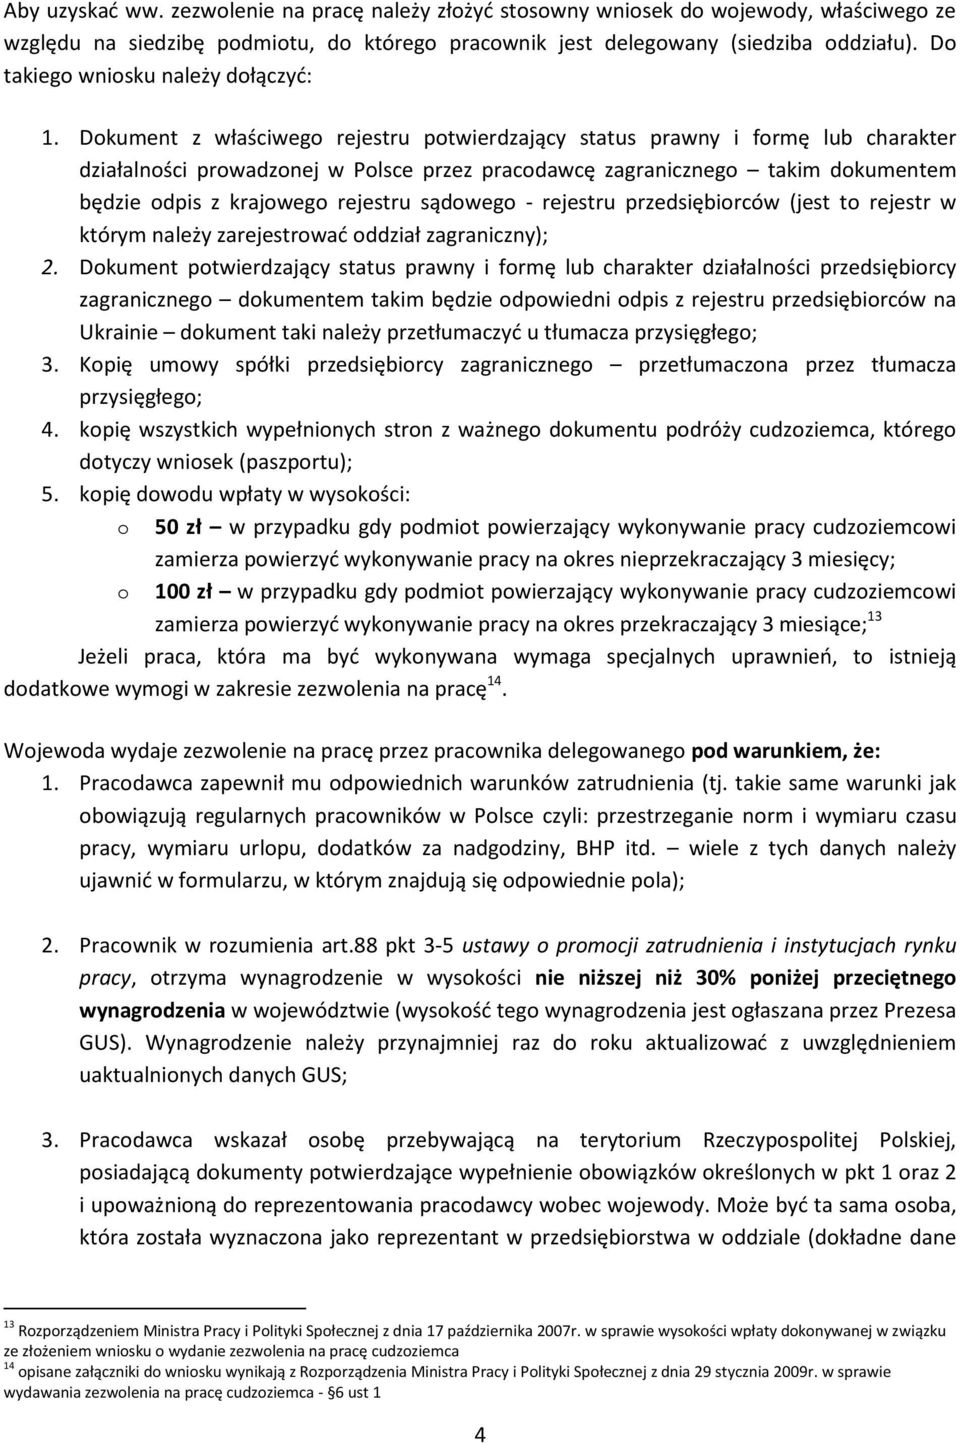 Dokument z właściwego rejestru potwierdzający status prawny i formę lub charakter działalności prowadzonej w Polsce przez pracodawcę zagranicznego takim dokumentem będzie odpis z krajowego rejestru